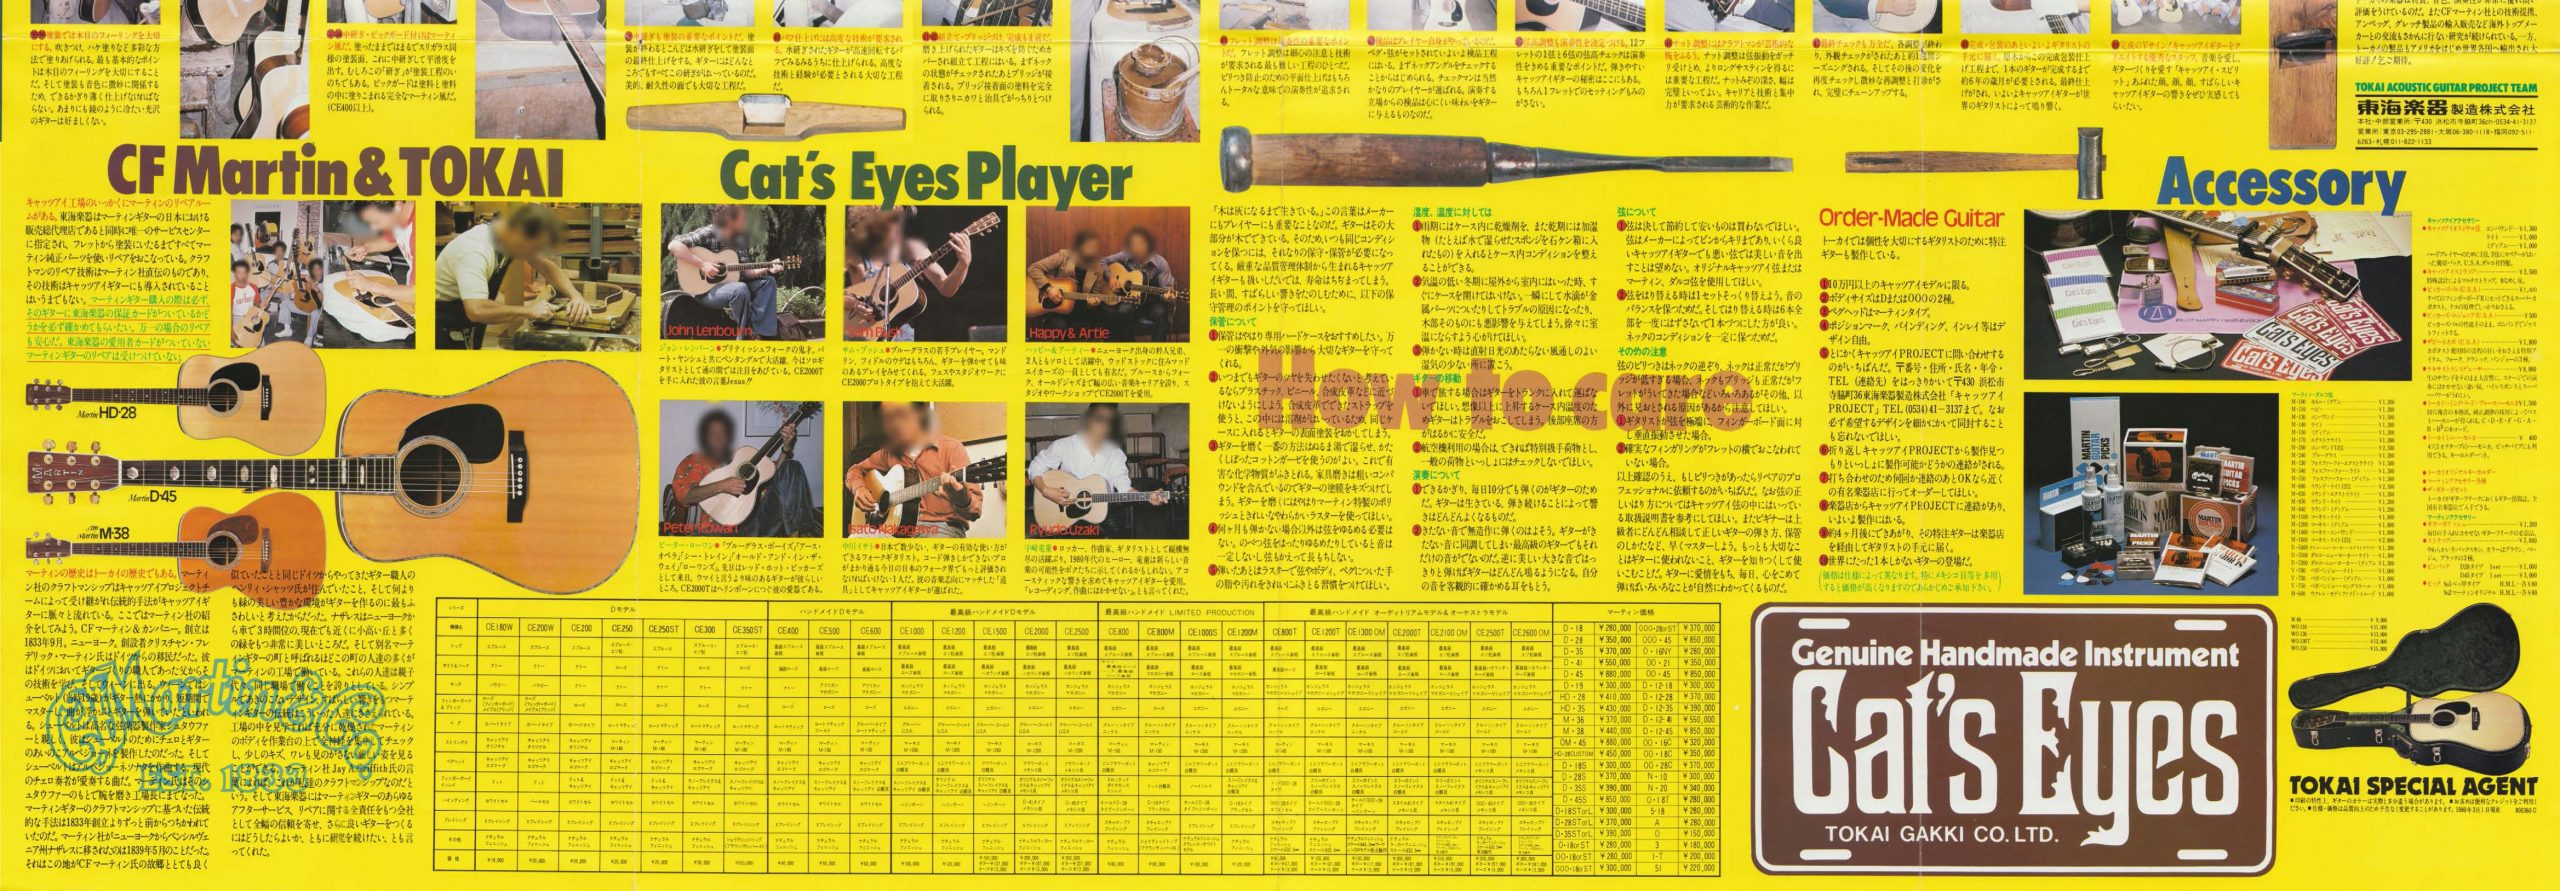 1980年 TOKAIアコースティックギター（Cat's Eyes & Martin）カタログ 